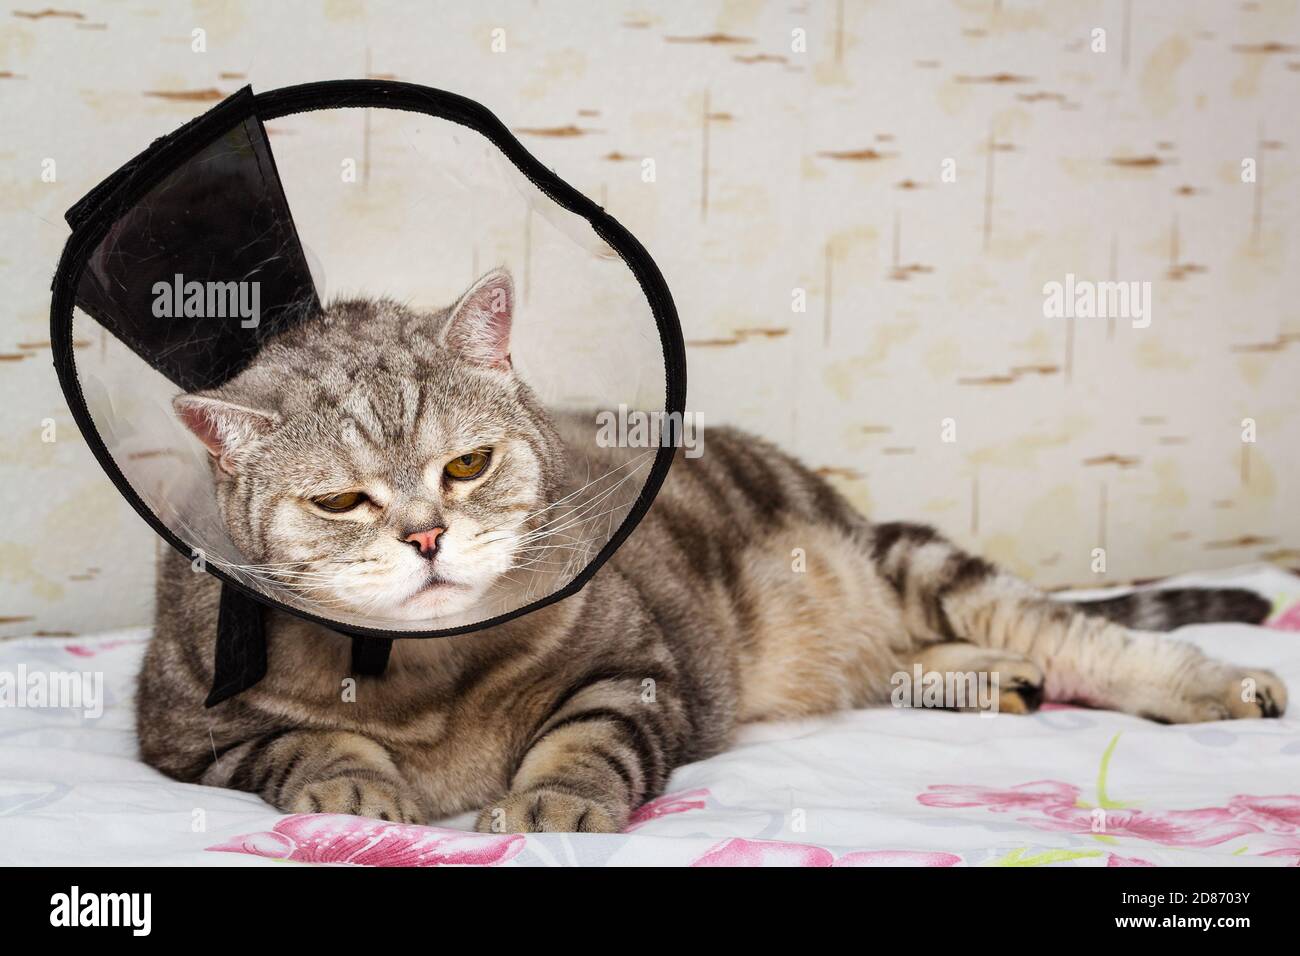 Maladie domestique des animaux de compagnie. Gris faucily shorthair chat écossais posant dans le collier conique Banque D'Images